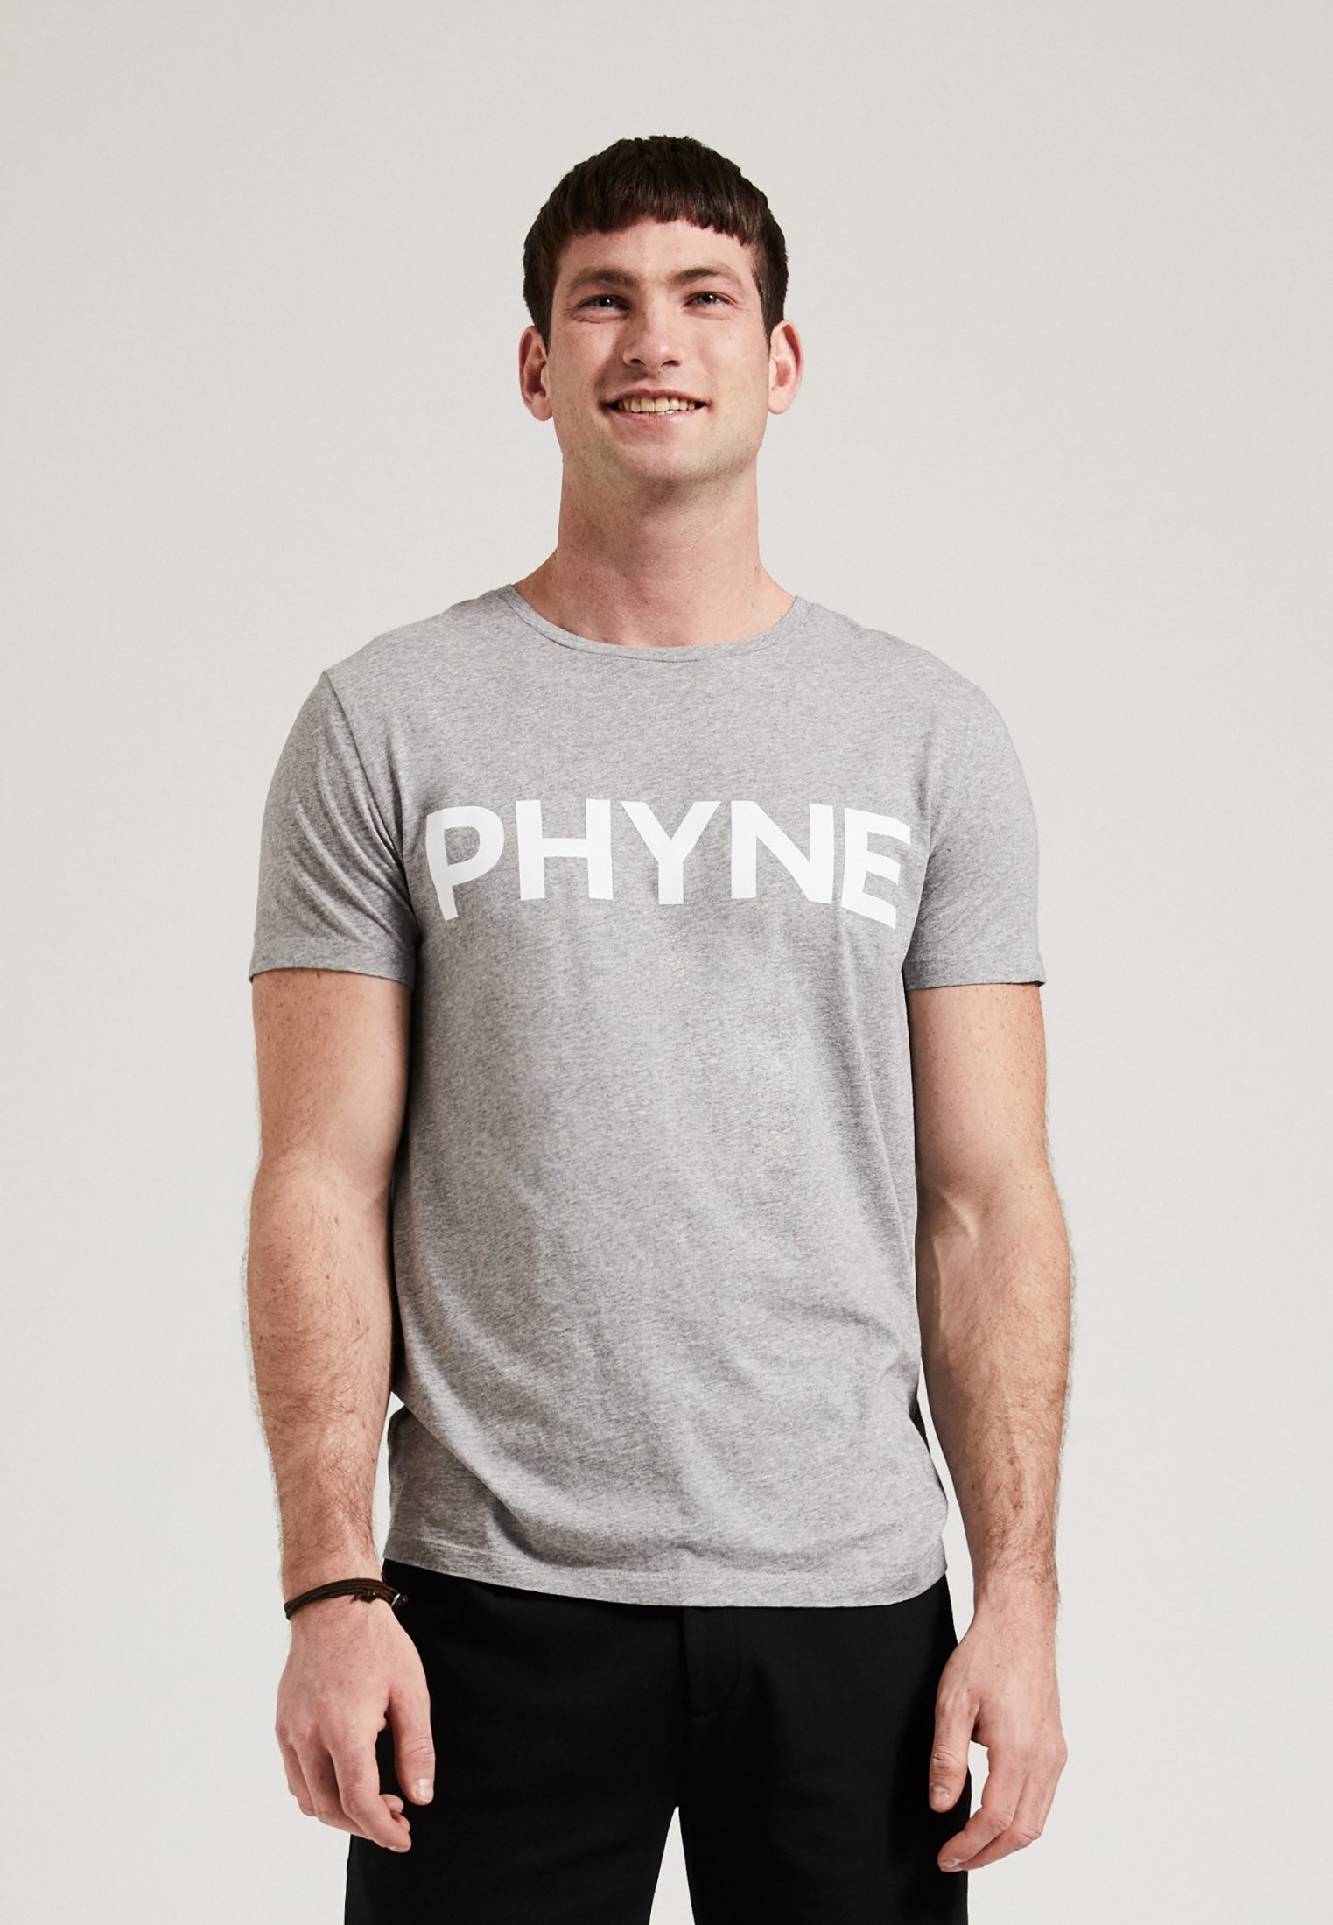 The PHYNE T-Shirt